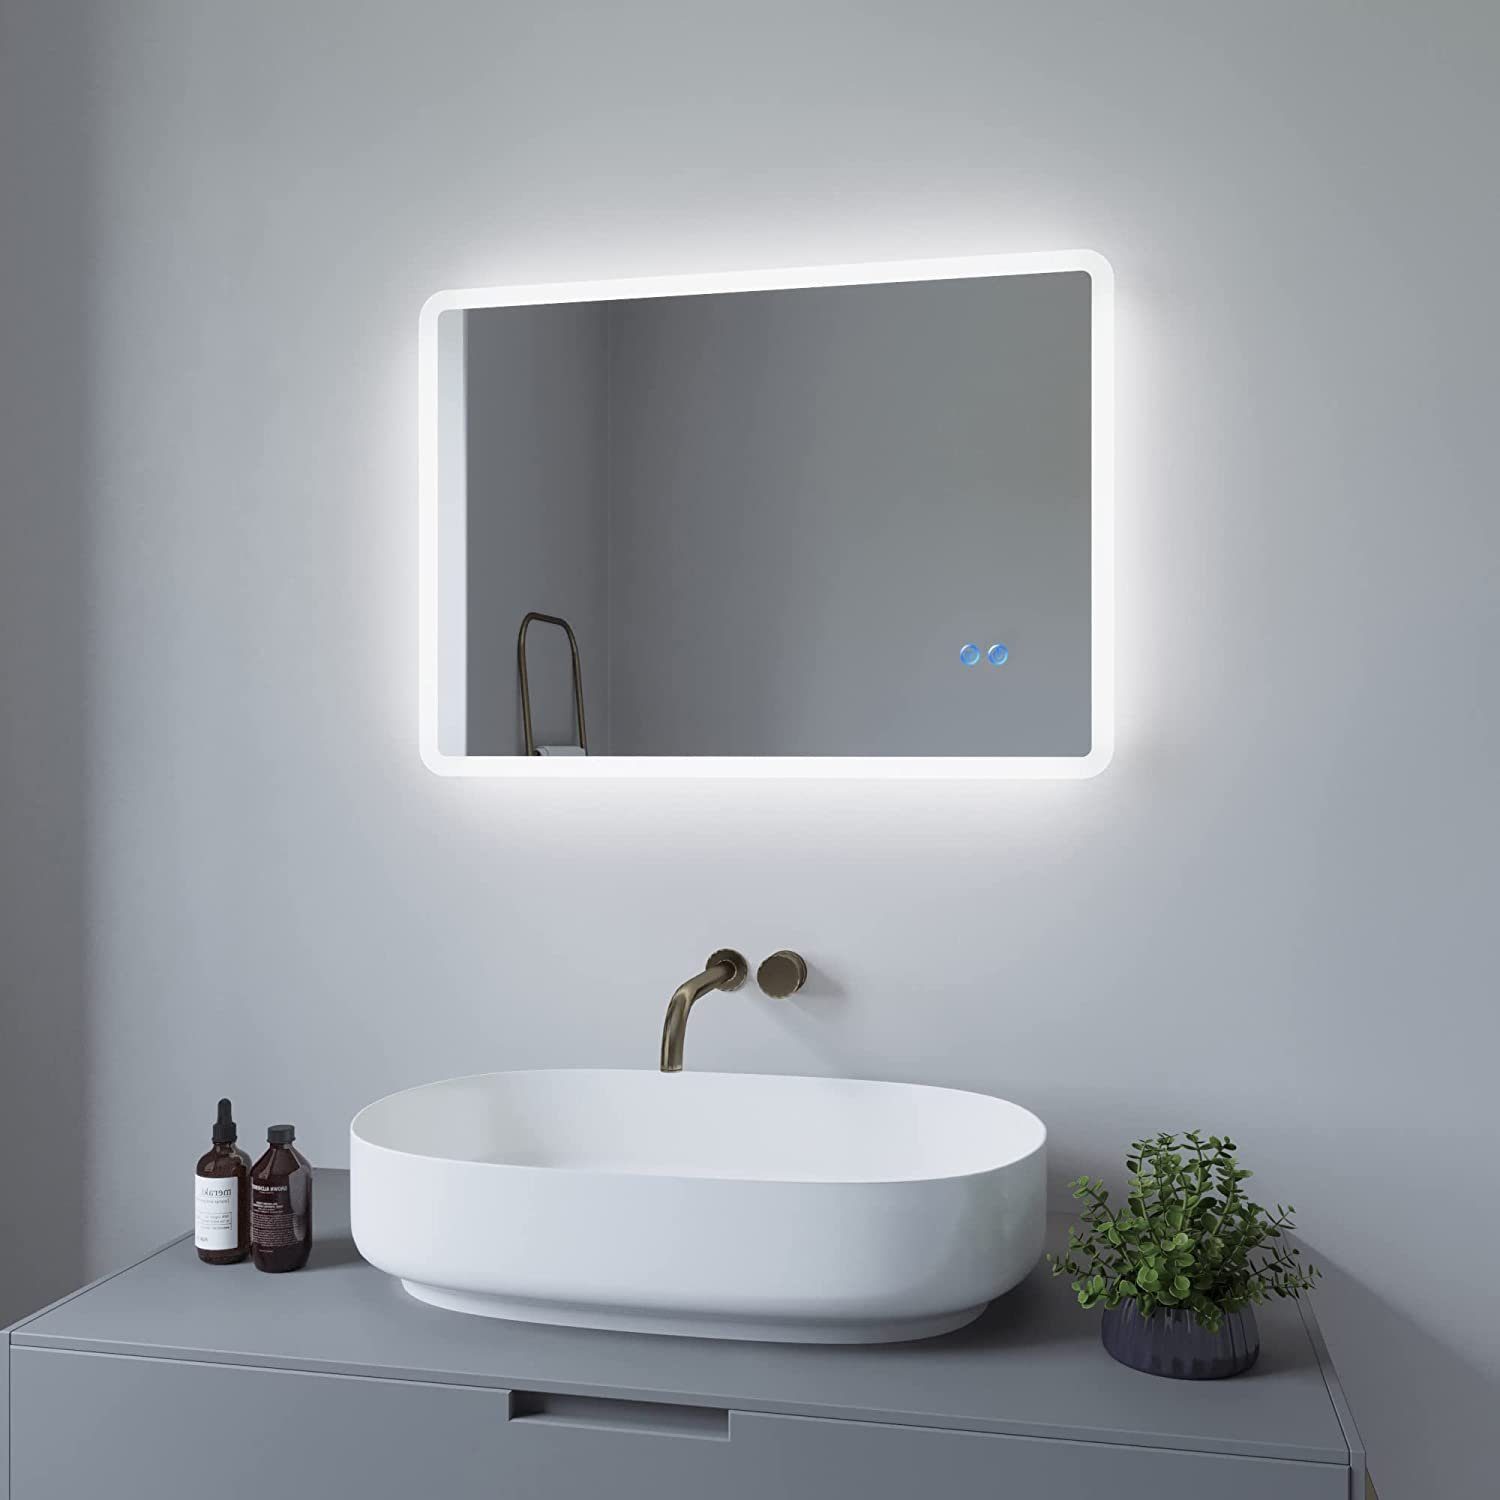 LED Bad Spiegel Badspiegel Design Lichtspiegel mit Touch Schalter Beschlagfrei 